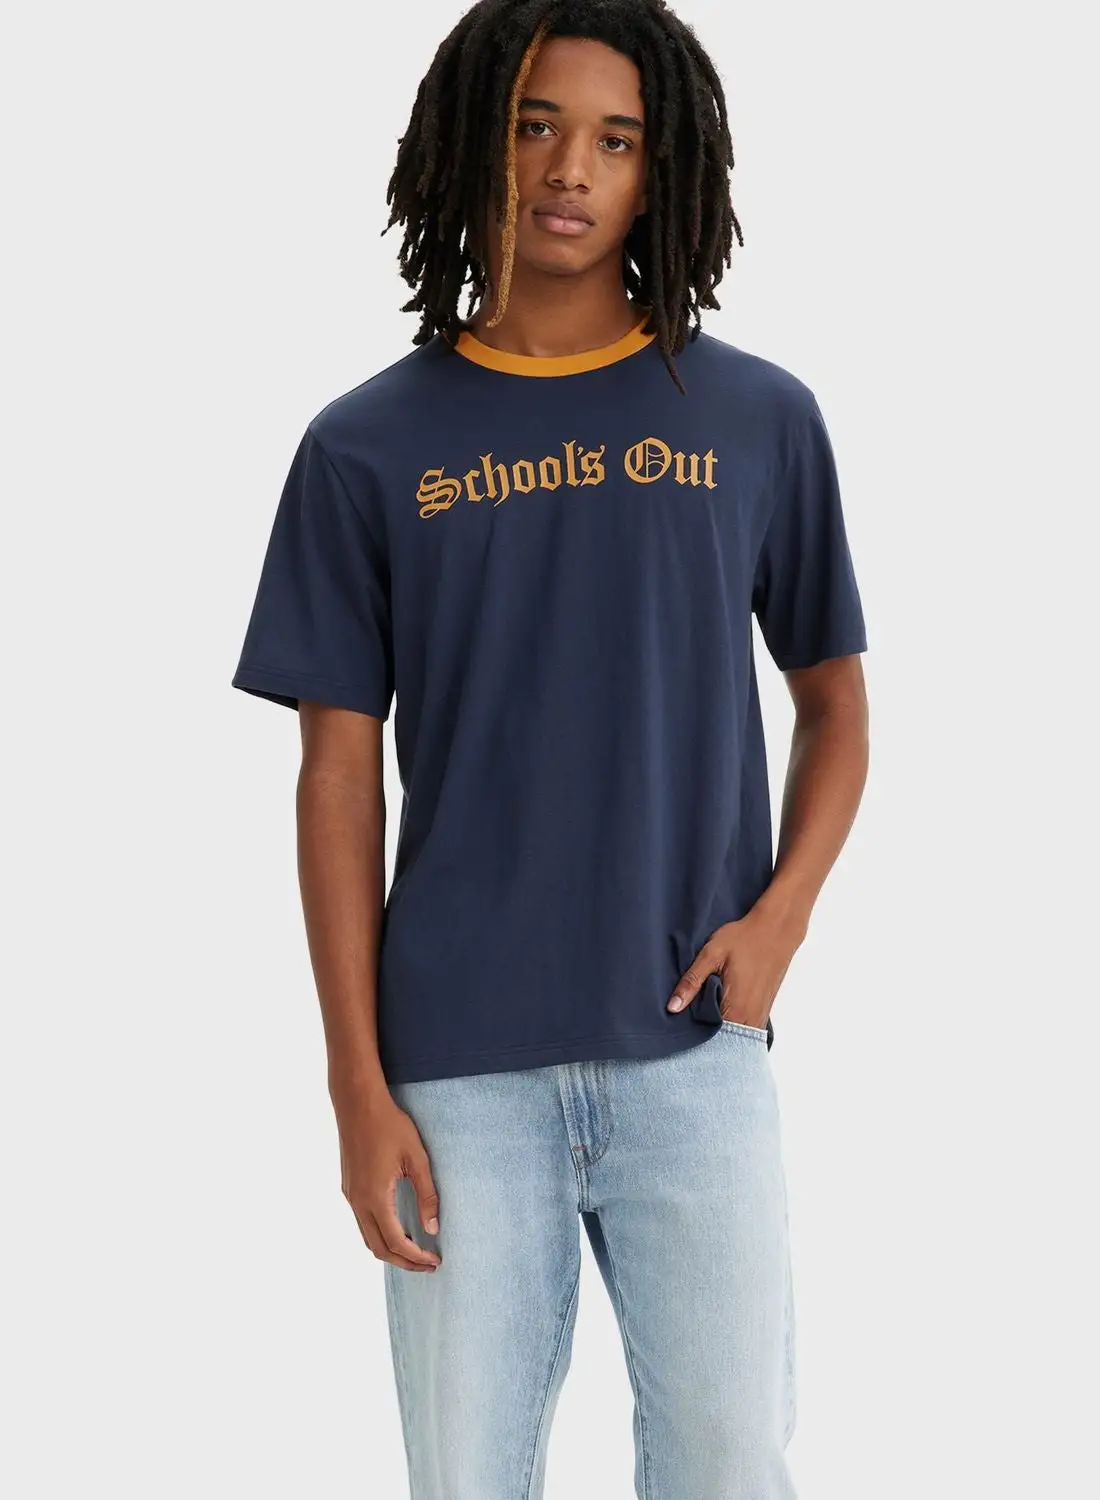 Levi's Essential Crew Neck T-Shirt